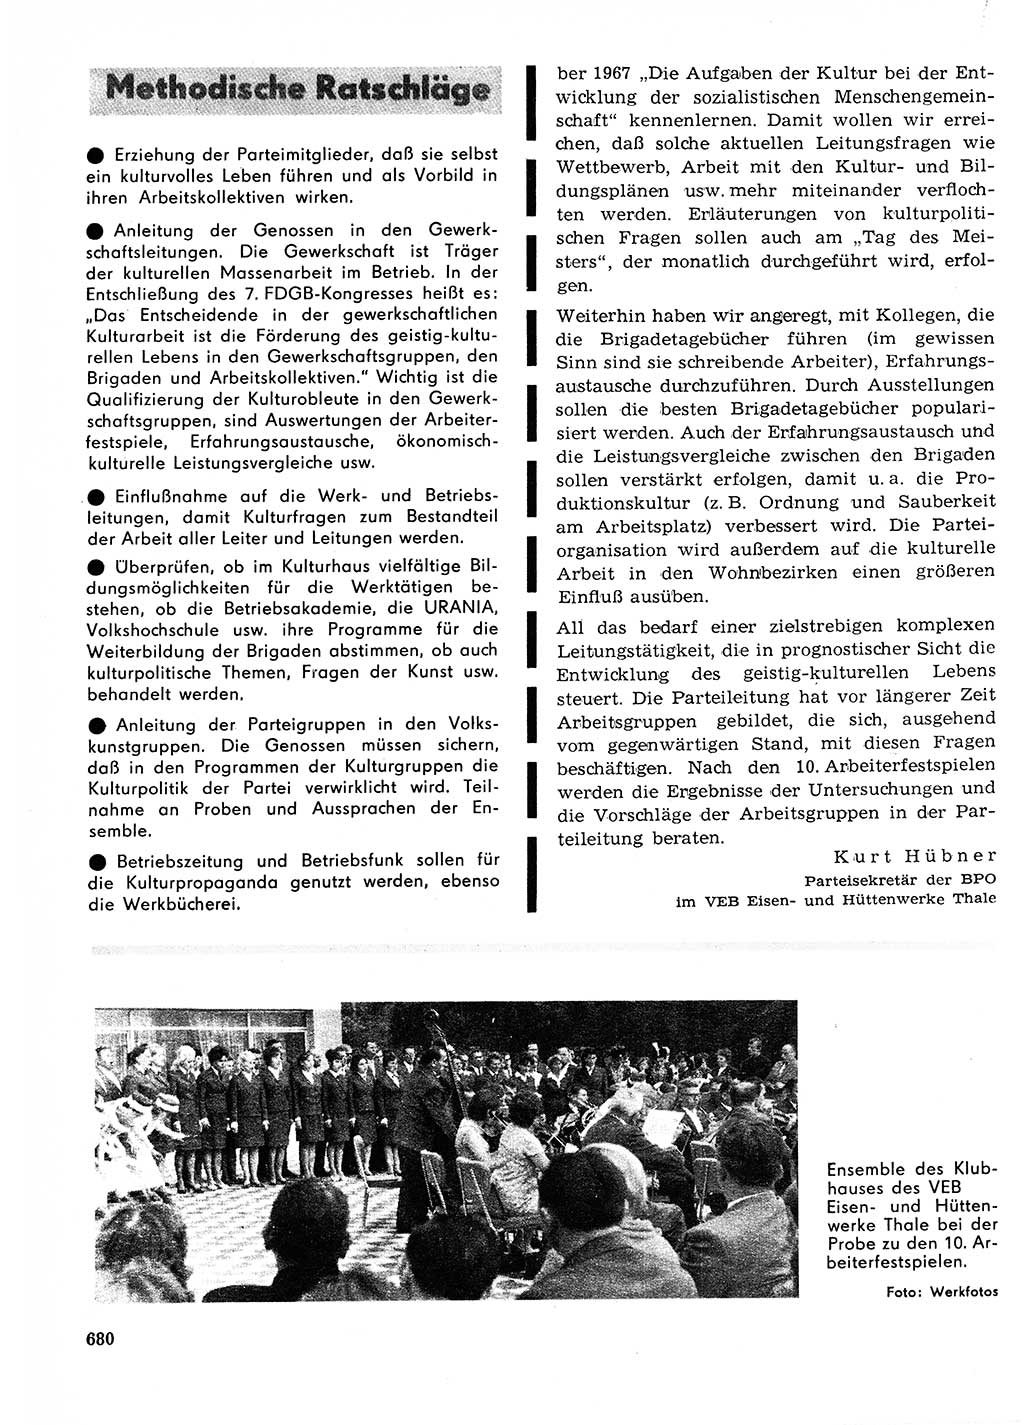 Neuer Weg (NW), Organ des Zentralkomitees (ZK) der SED (Sozialistische Einheitspartei Deutschlands) für Fragen des Parteilebens, 23. Jahrgang [Deutsche Demokratische Republik (DDR)] 1968, Seite 680 (NW ZK SED DDR 1968, S. 680)